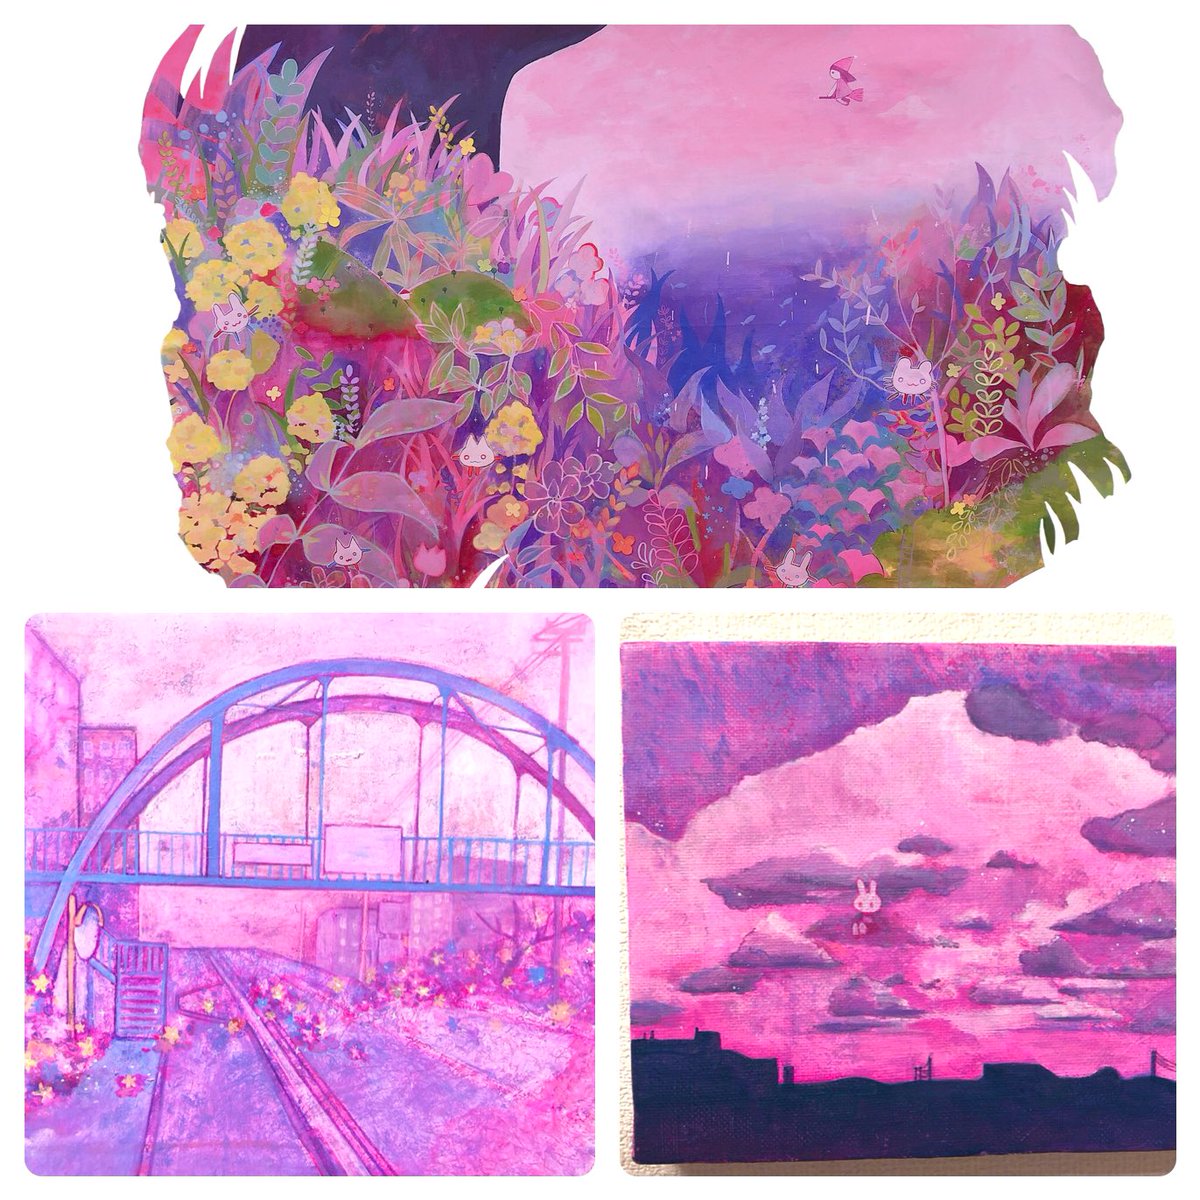 ピンクと紫で絵を描くよ〜?
ゆめかわ、?、?、?、可愛いものが好きです。
アクリル絵の具で描く人です。

RT中心に見ていきます〜

よろしくお願い致します?!

#絵描きさんと繋がりたい
#冬の創作クラスタフォロー祭り 